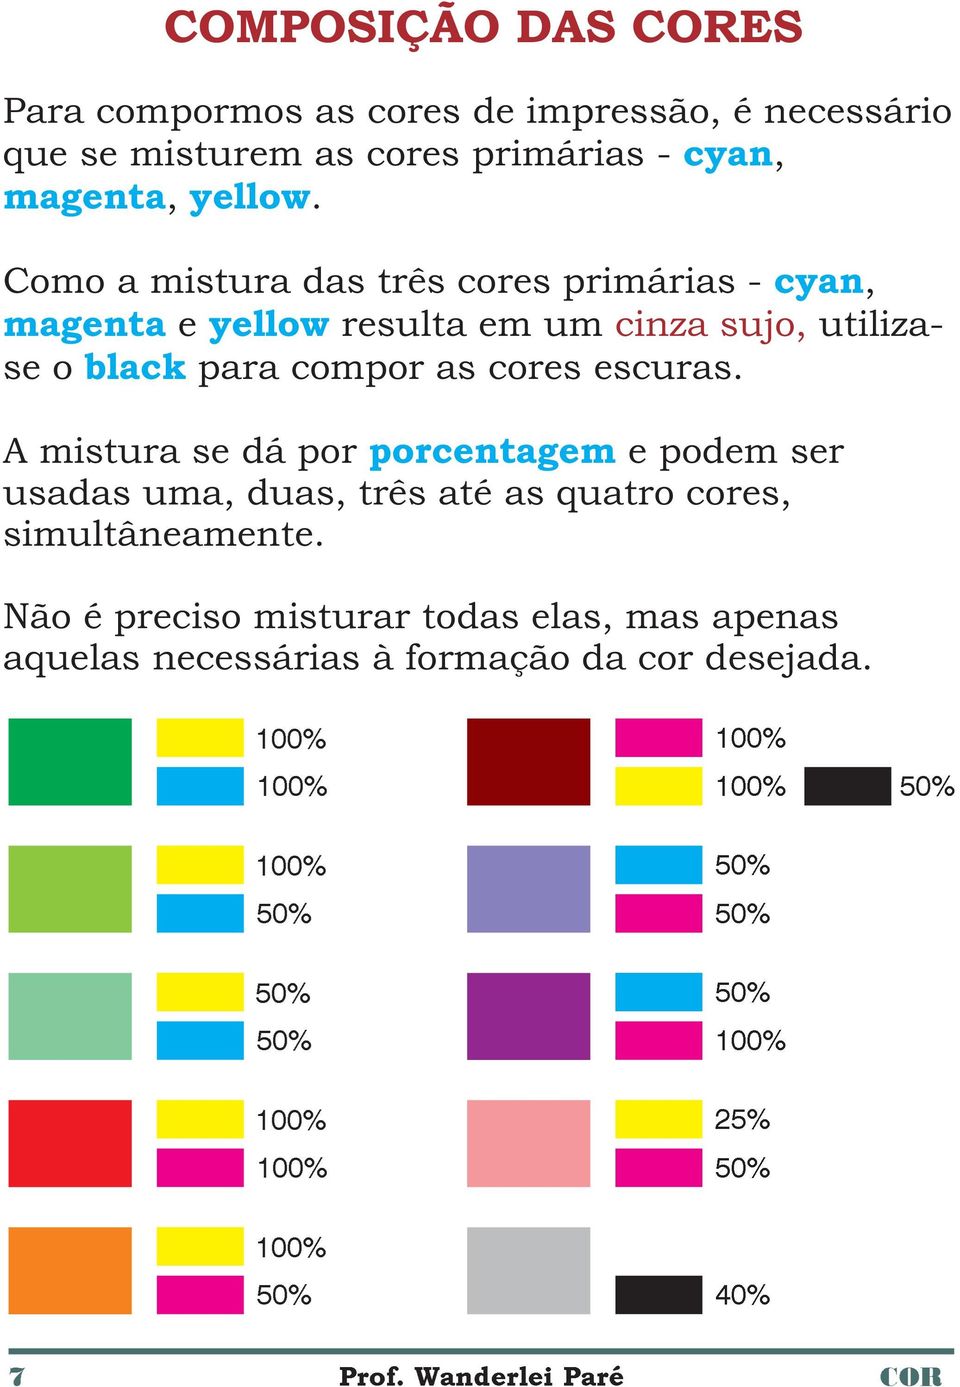 A mistura se dá por porcentagem e podem ser usadas uma, duas, três até as quatro cores, simultâneamente.